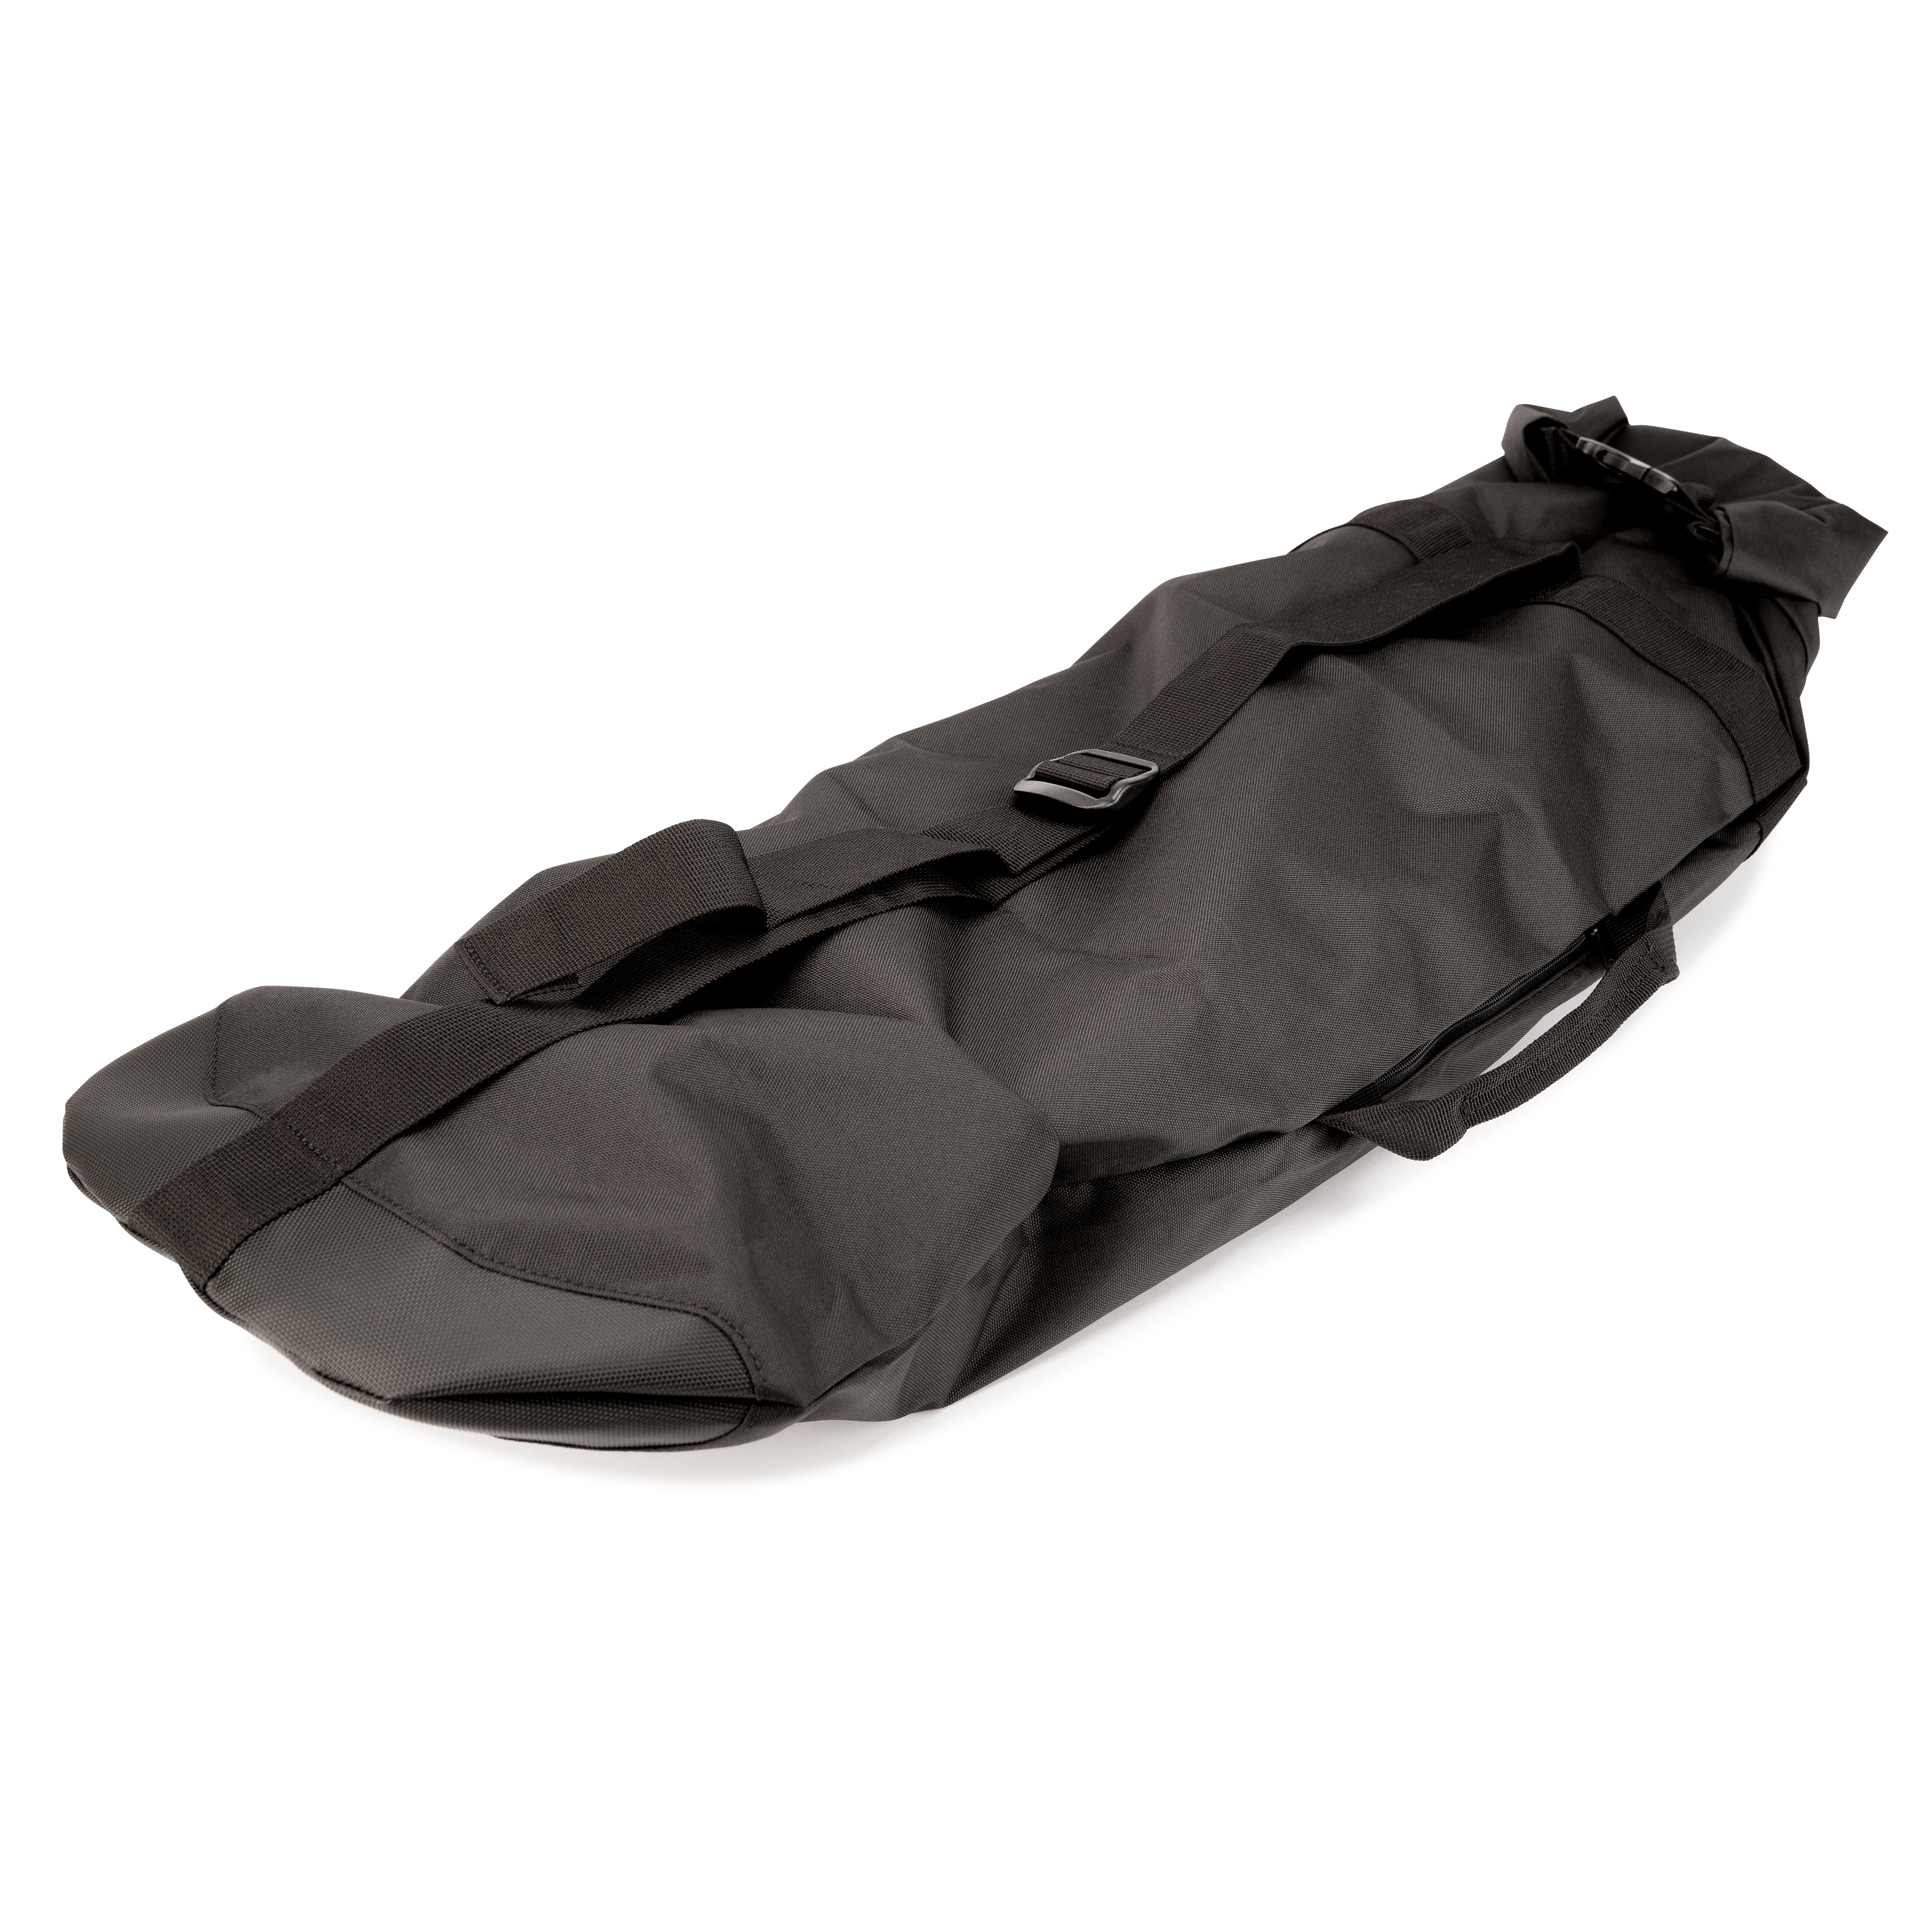 OXELO Boardbag Skateboardtasche SC100 Ecodesign wasserdicht schwarz EINHEITSGRÖSSE